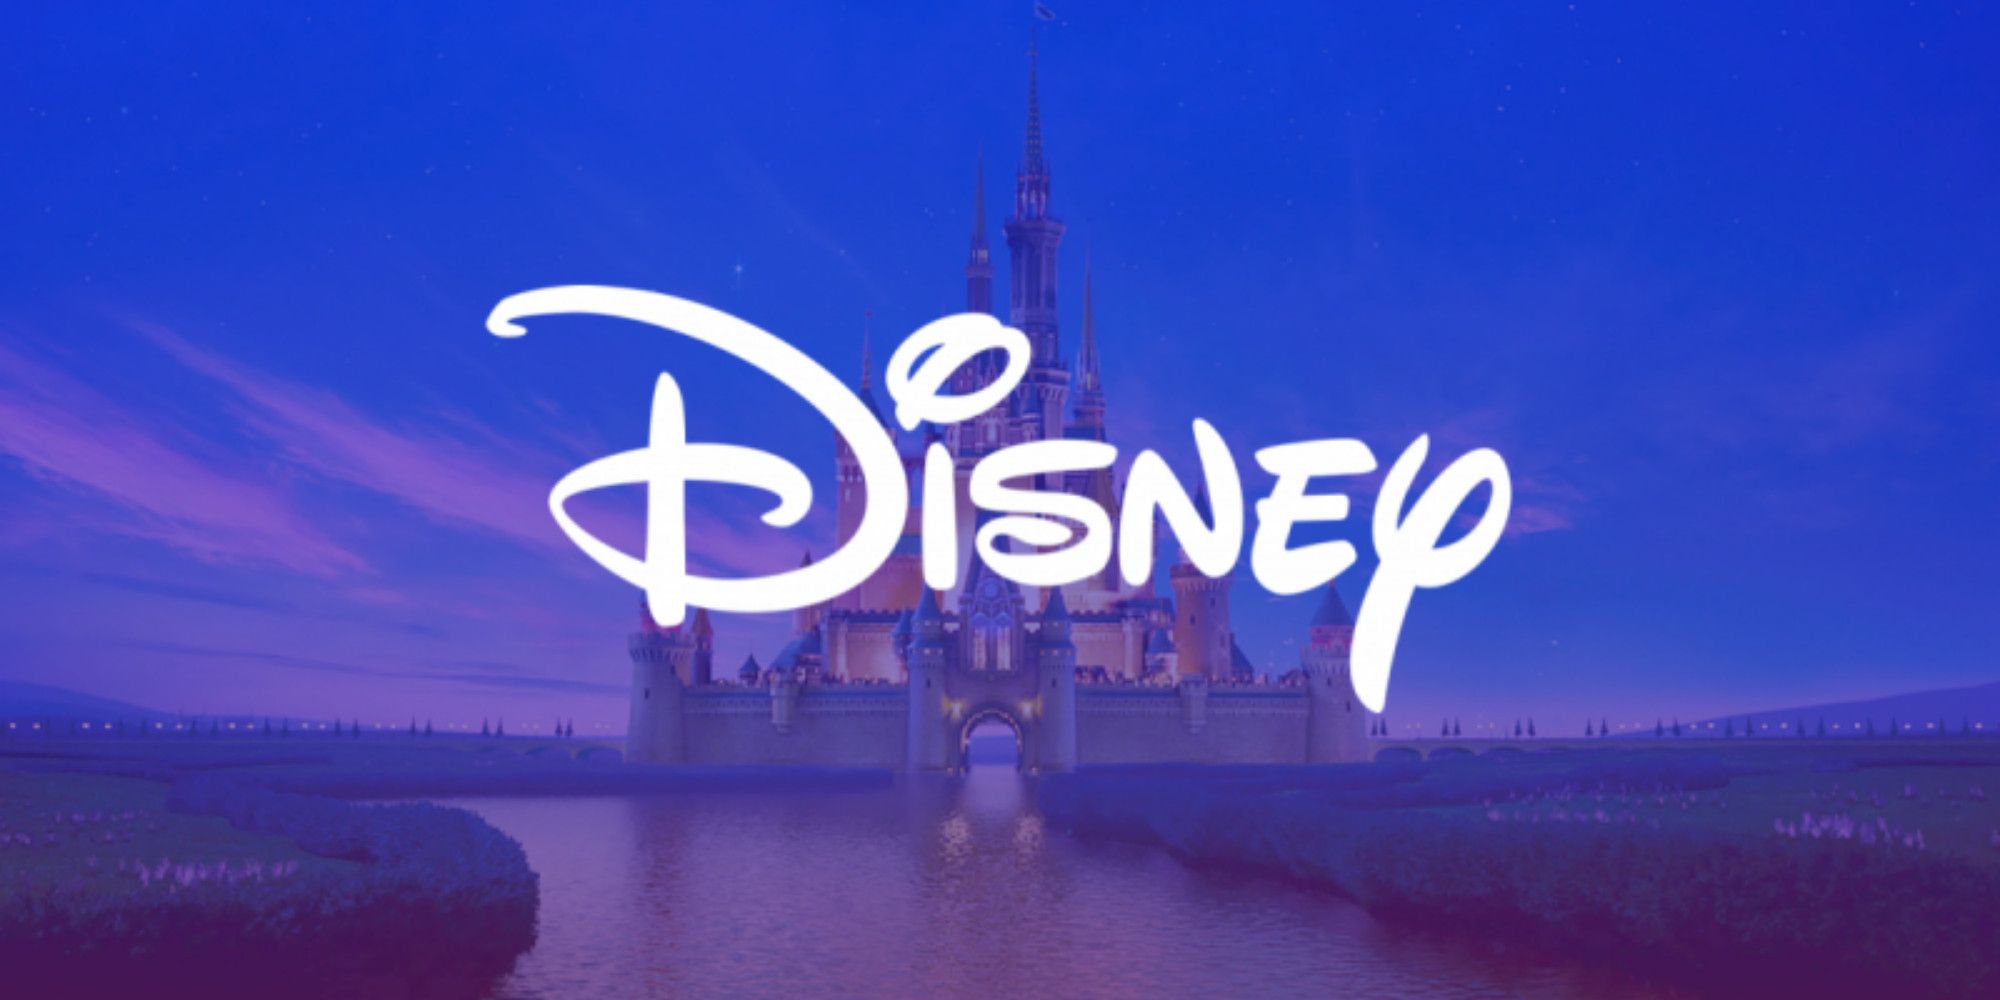 El logo de Disney brilla frente al castillo de Disney